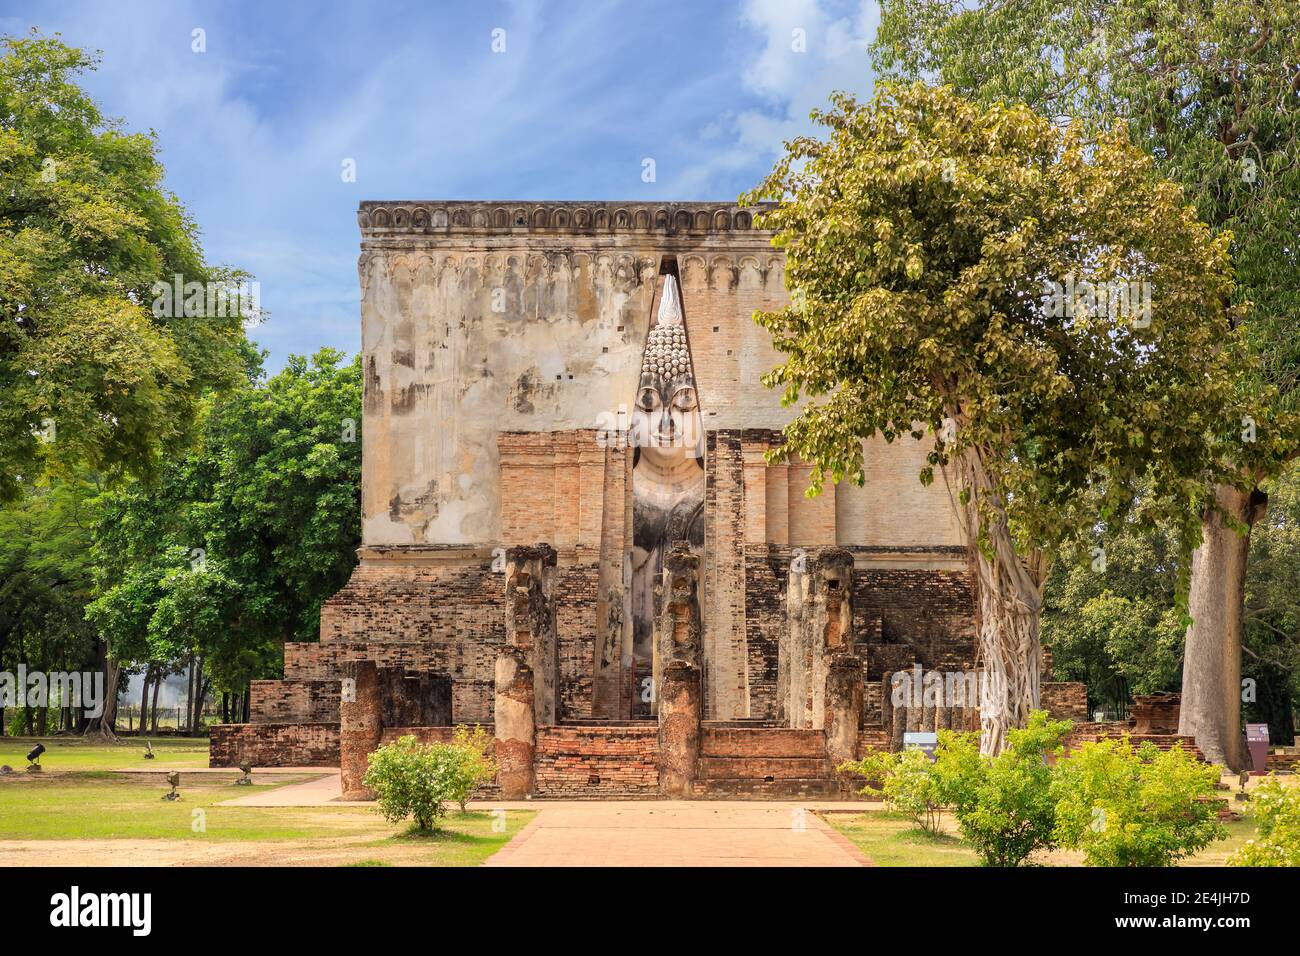 Famosa statua del Buddha di nome Phra Achana situata nella cappella in rovina del tempio di Wat si Chum, Sukhothai Historical Park, Thailandia Foto Stock